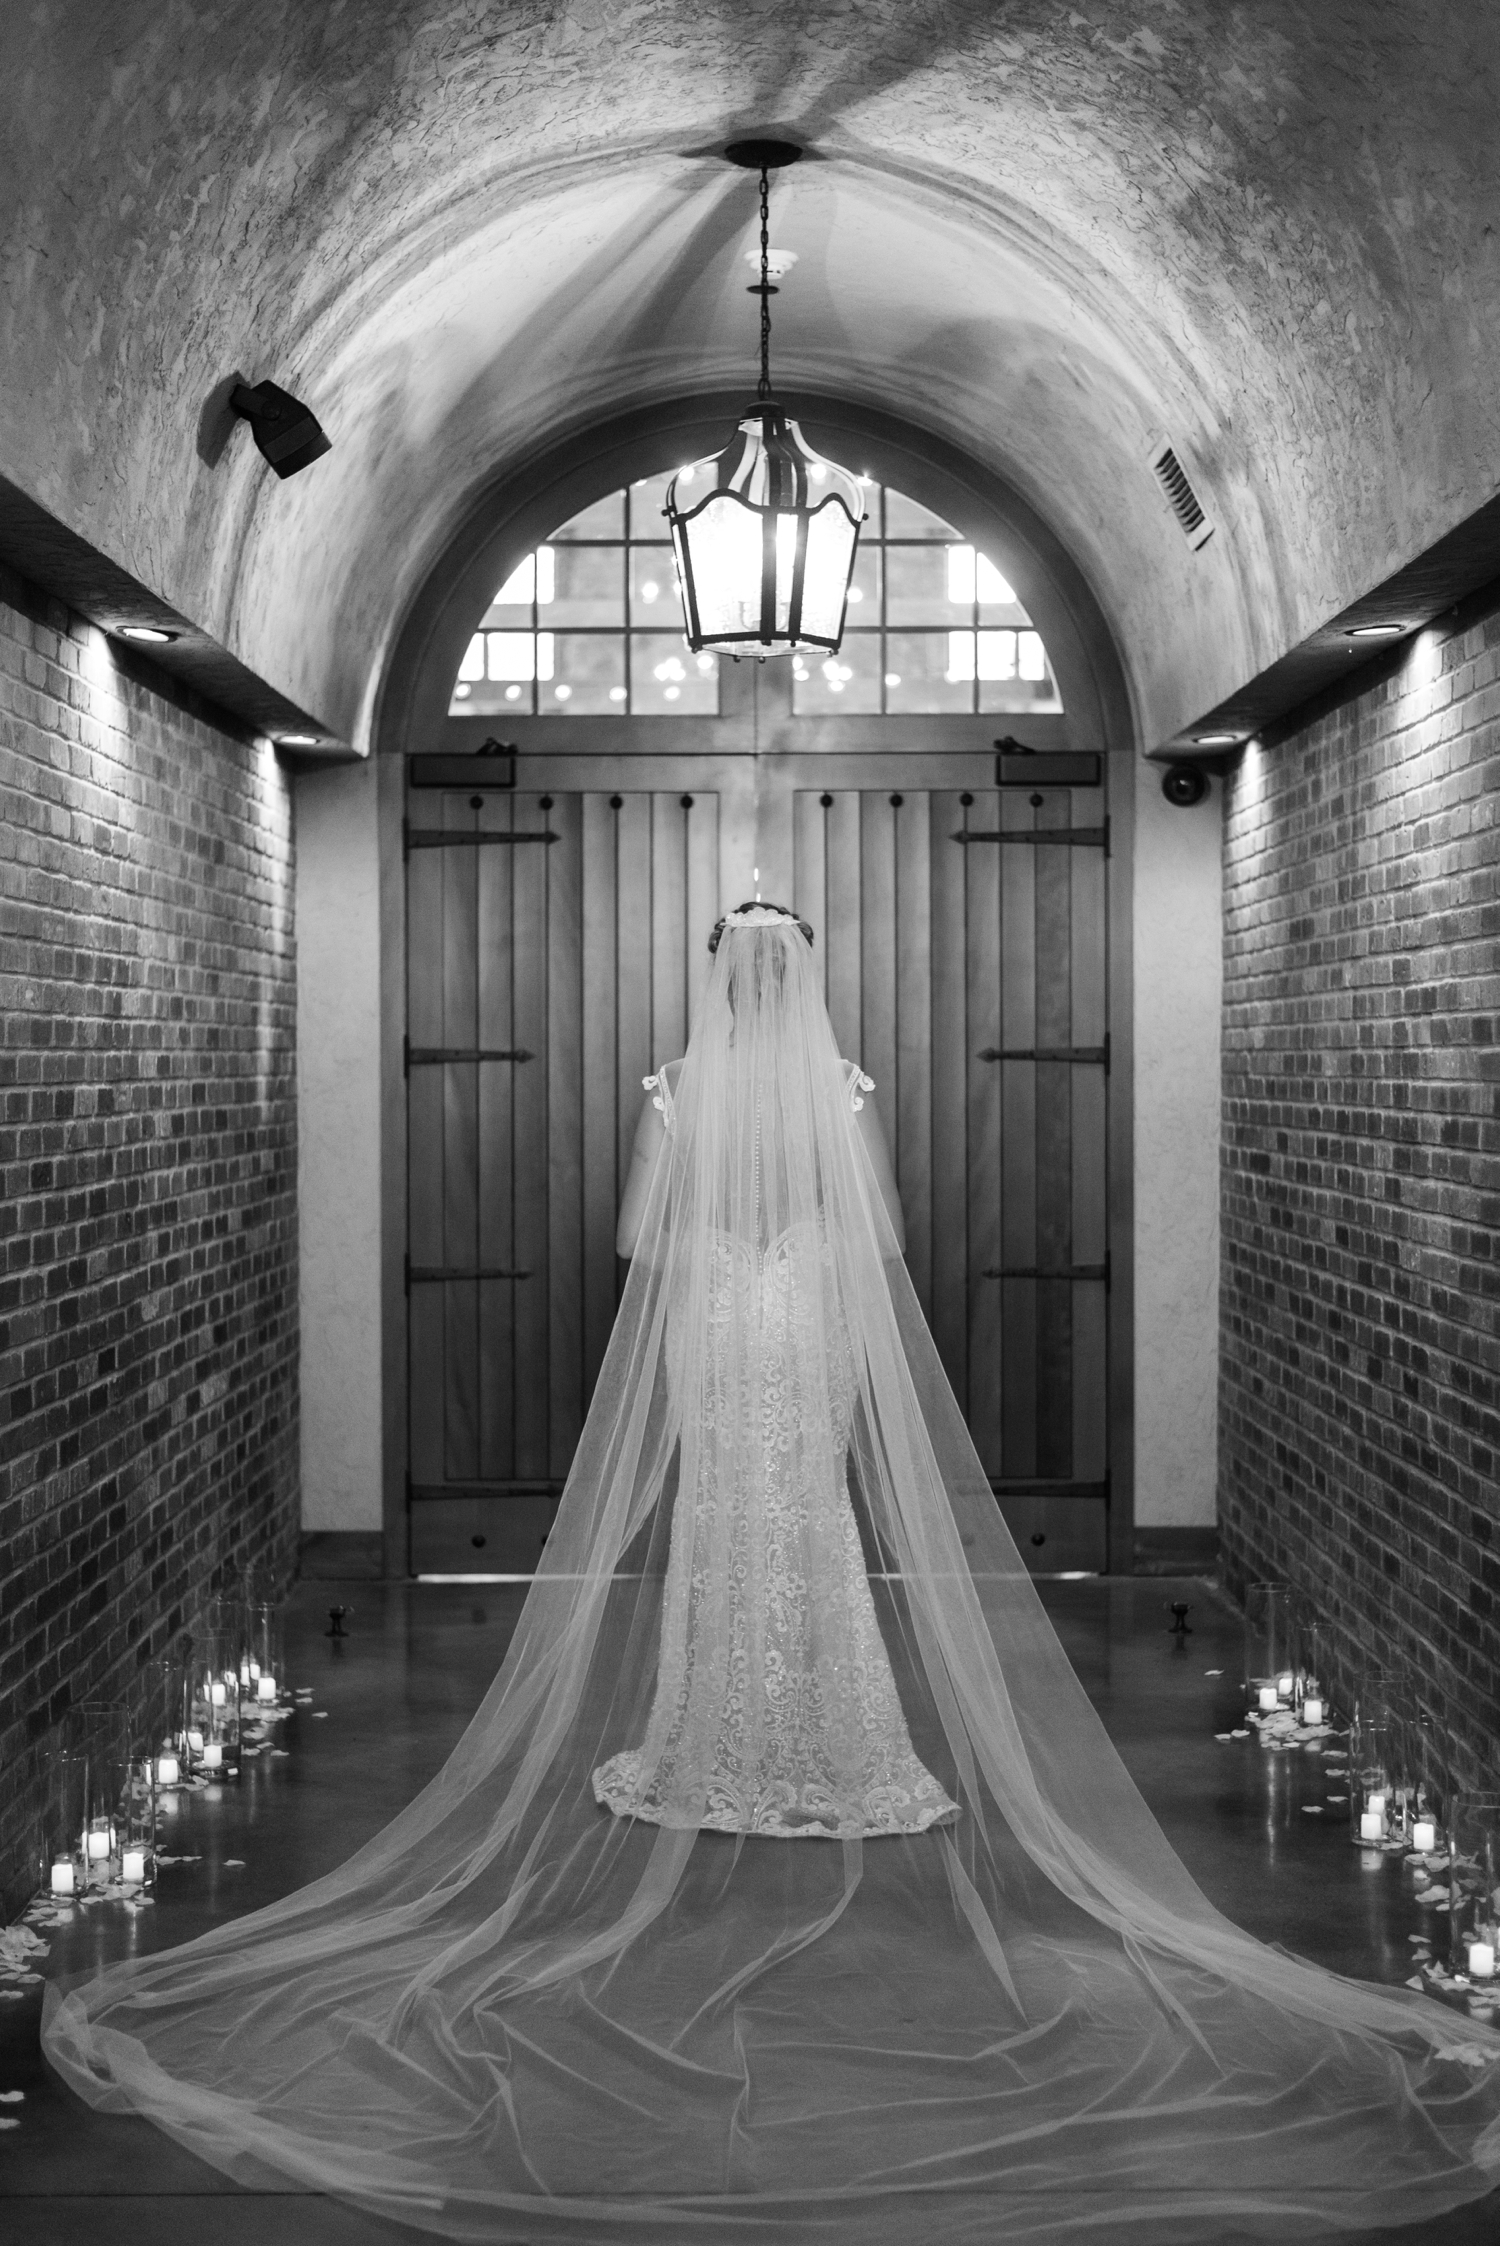 Pavilion at Orchard Ridge Wedding by Illinois Wedding Photographer Courtney Rudicel Photography